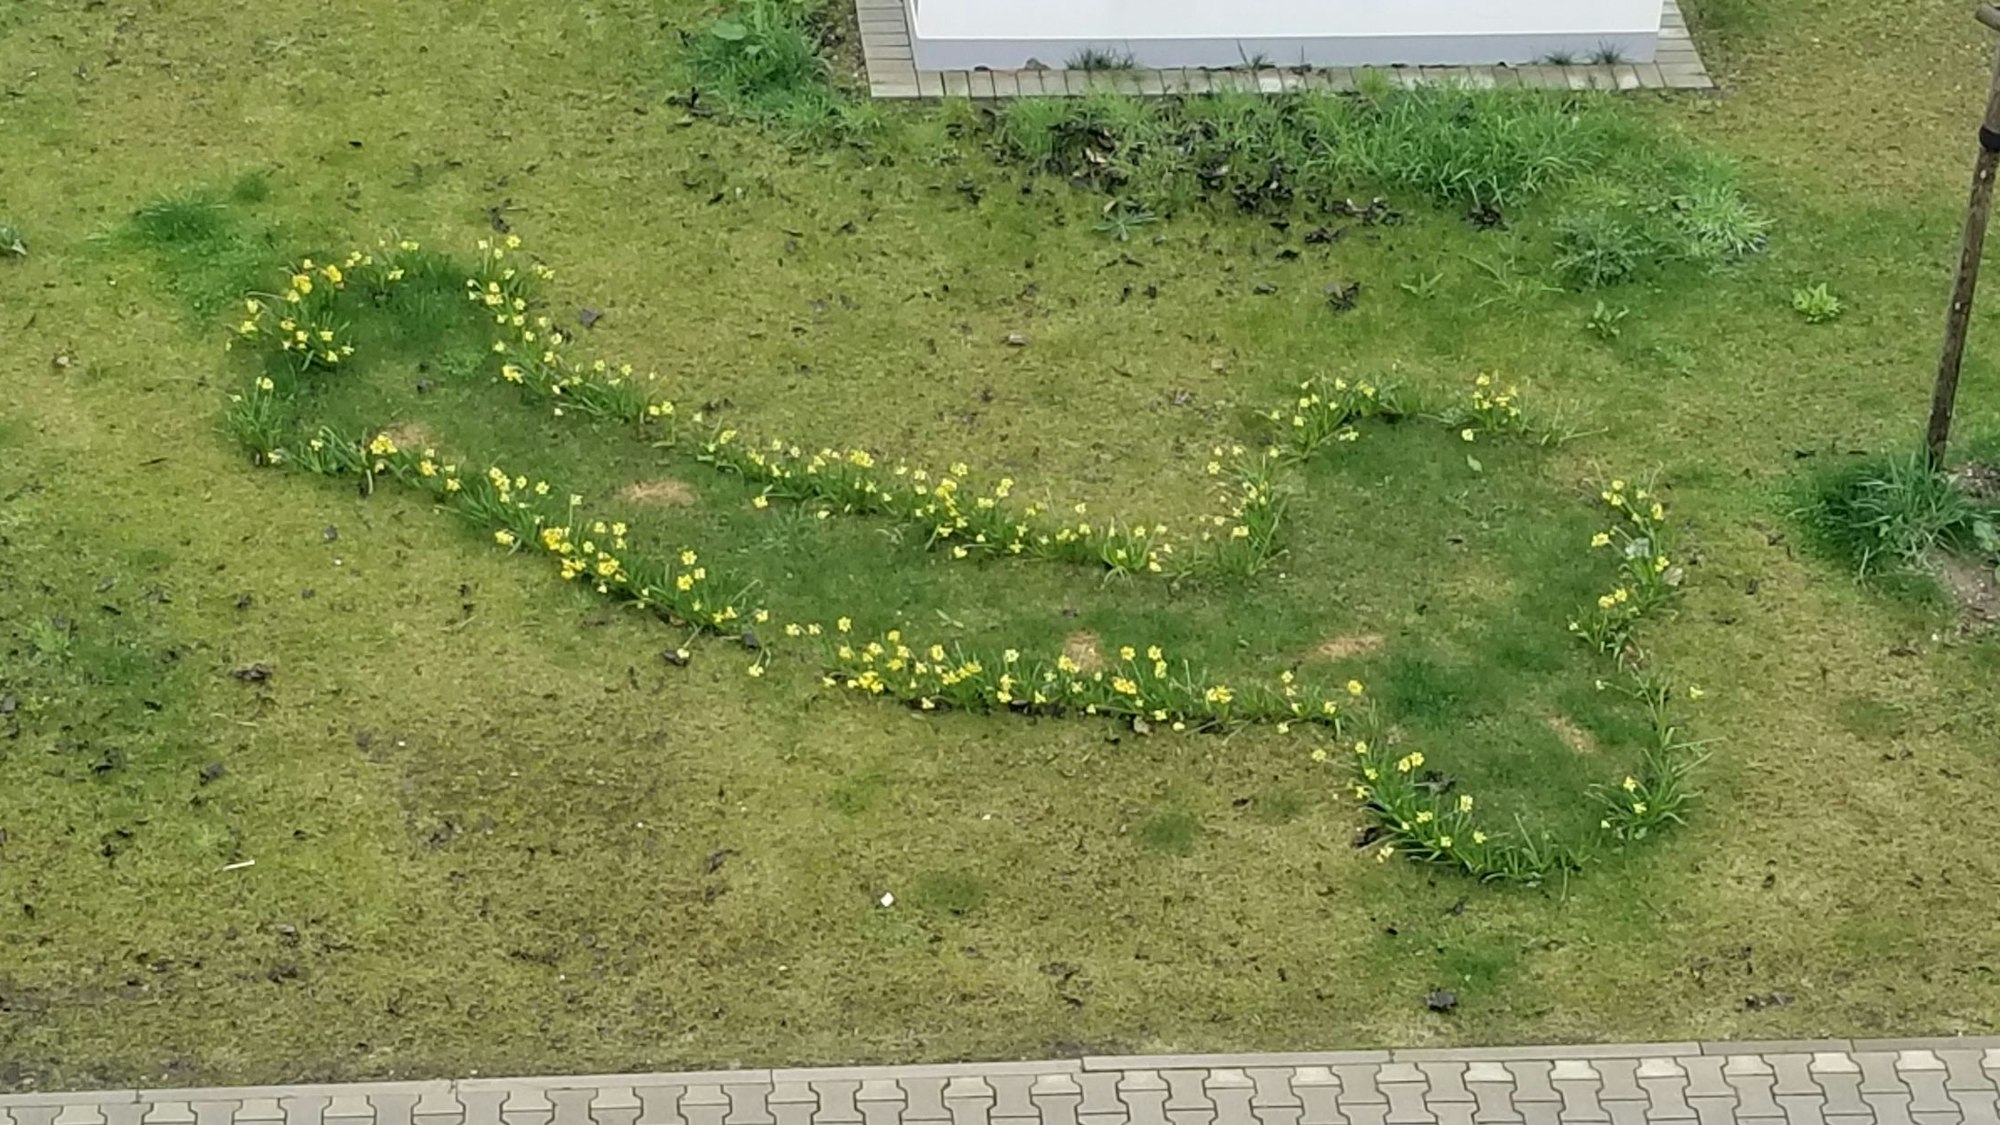 Ein Osterglocken-Beet in Köln. Die Blumen sind in Penisform gepflanzt worden.